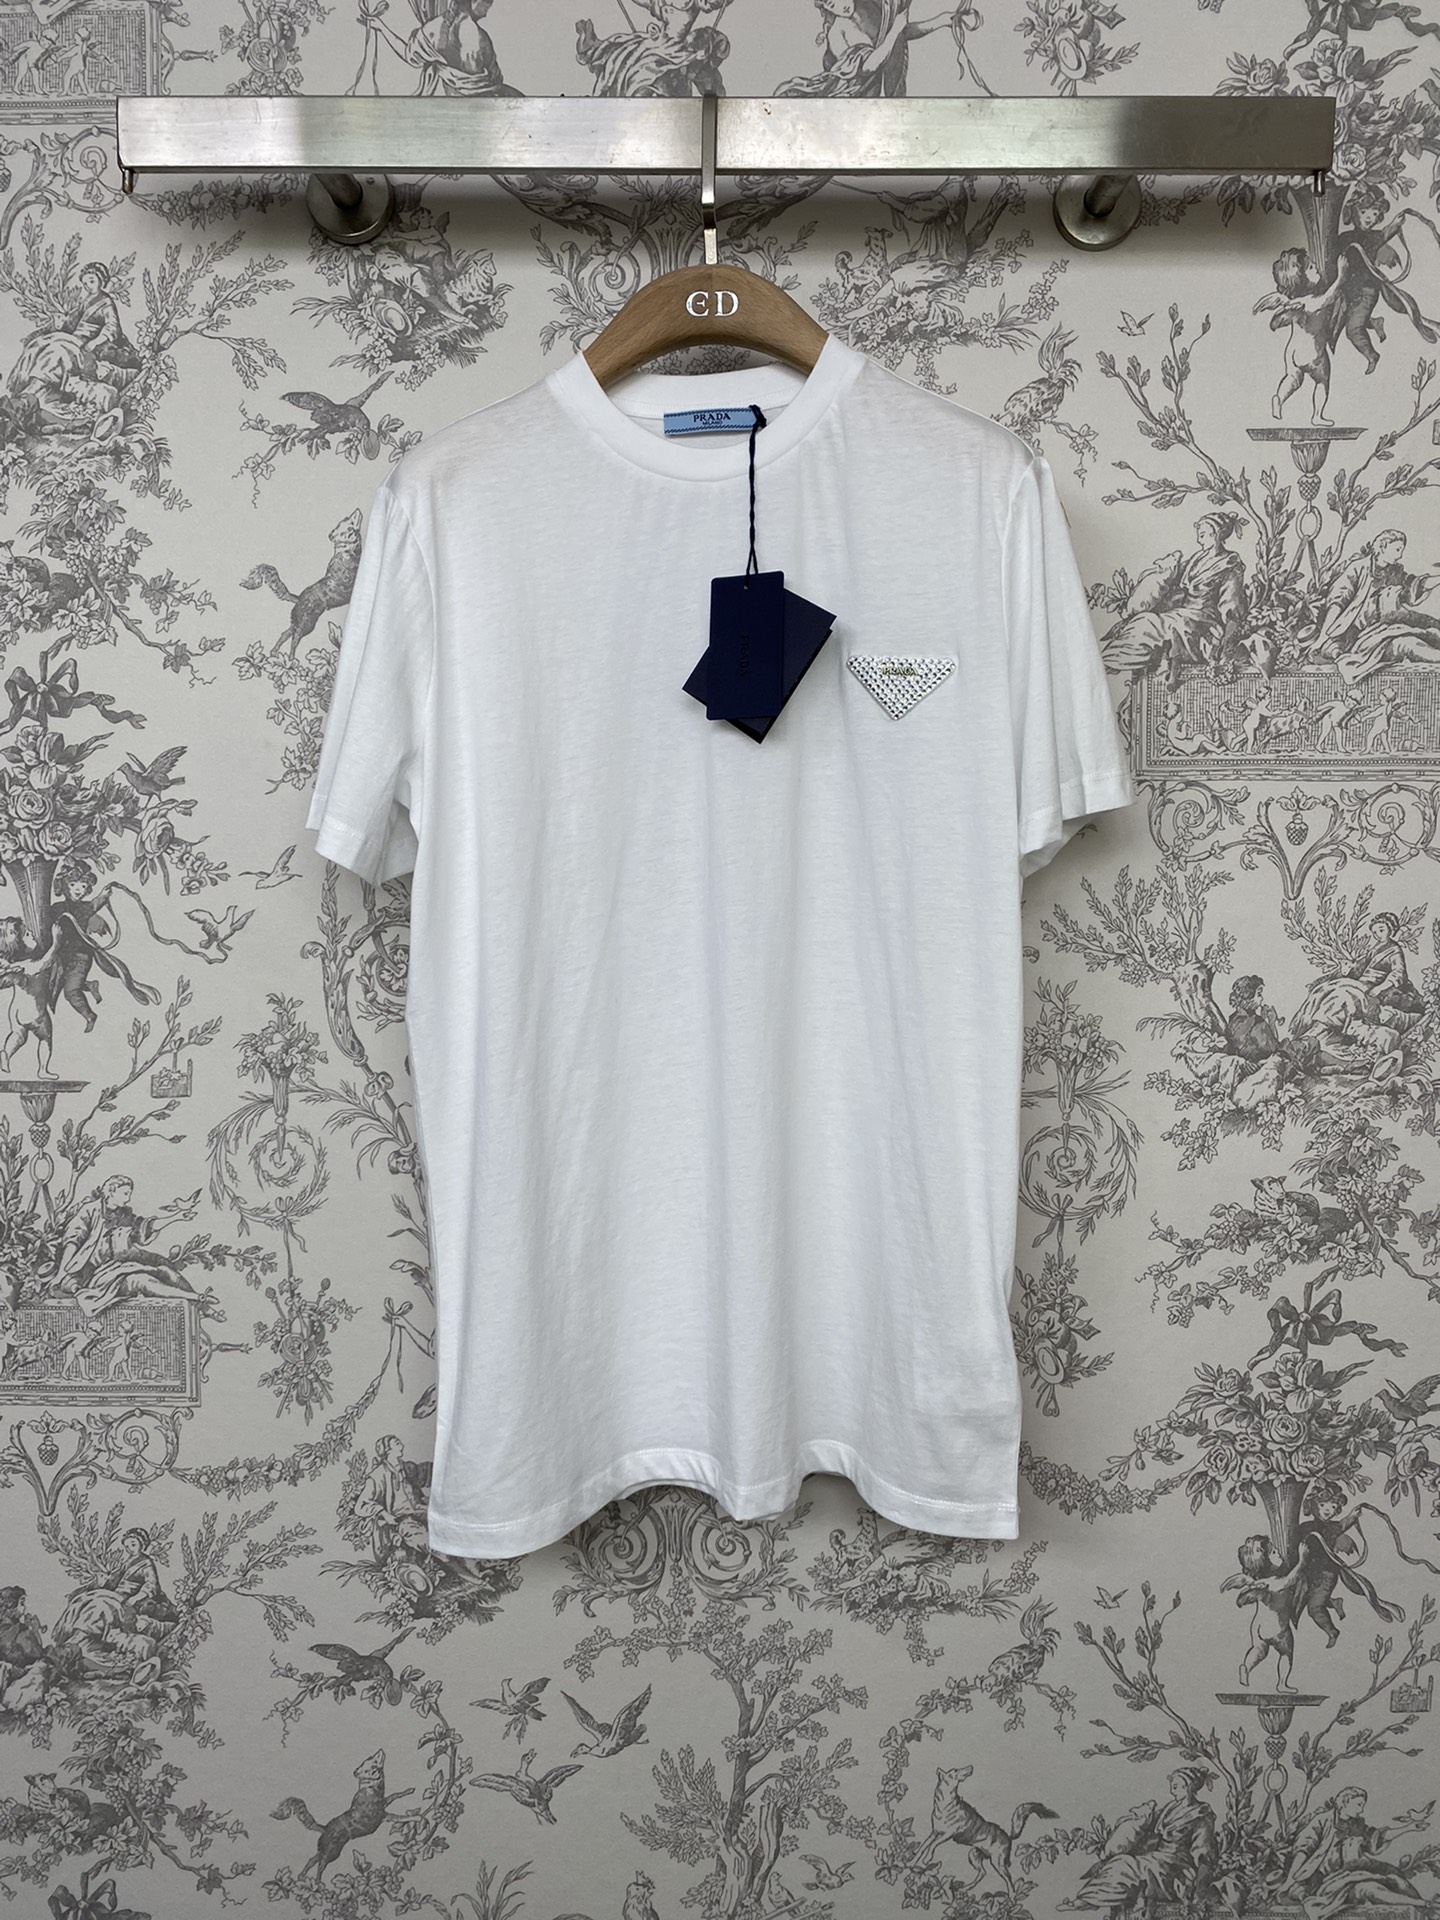 Prada Vêtements T-Shirt Noir Blanc Serti de diamants Coton Série printemps